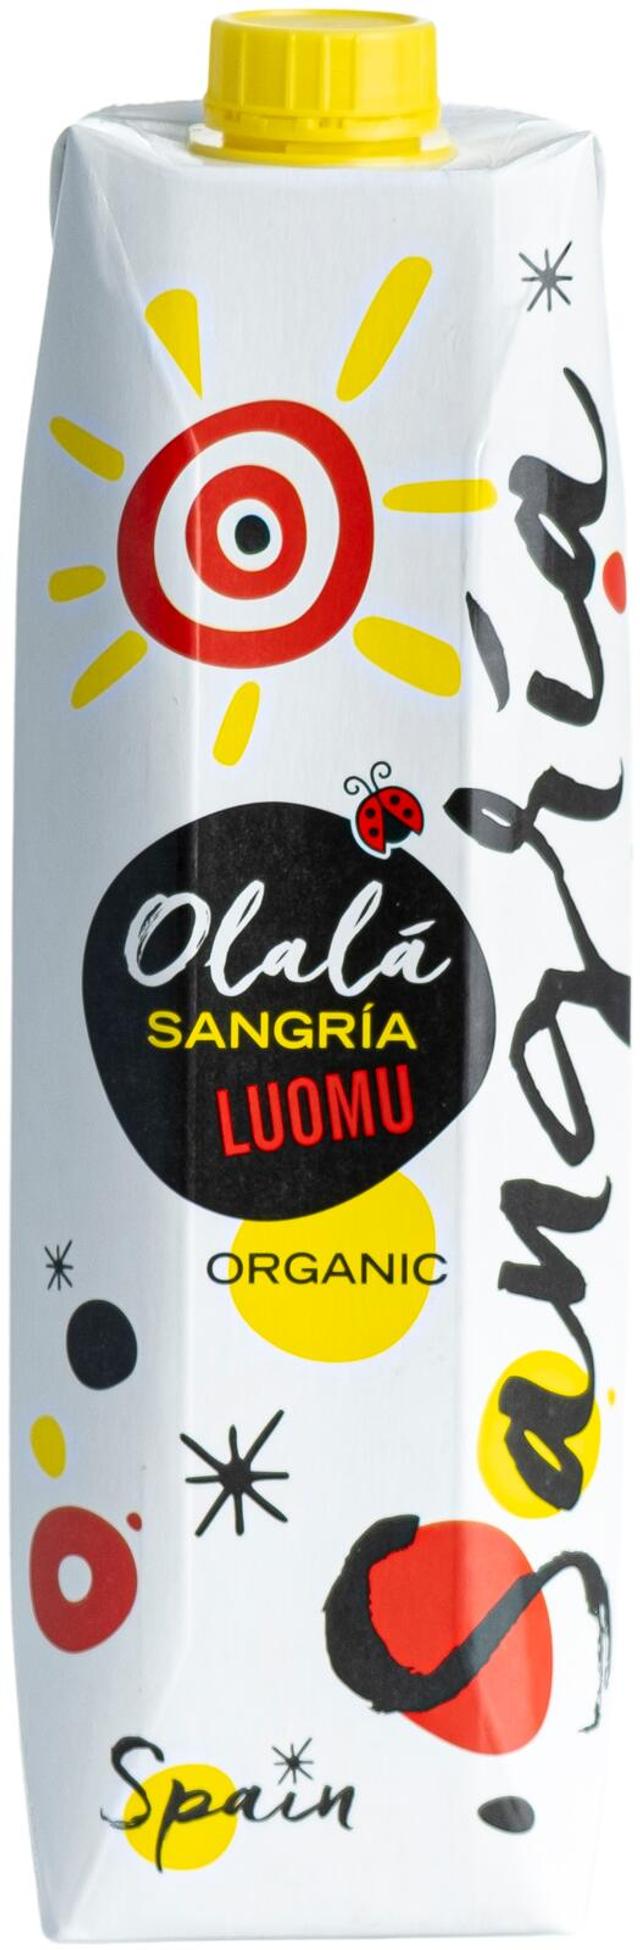 Espanjalainen Luomu Olala Sangria 1l 5.5% Tetra